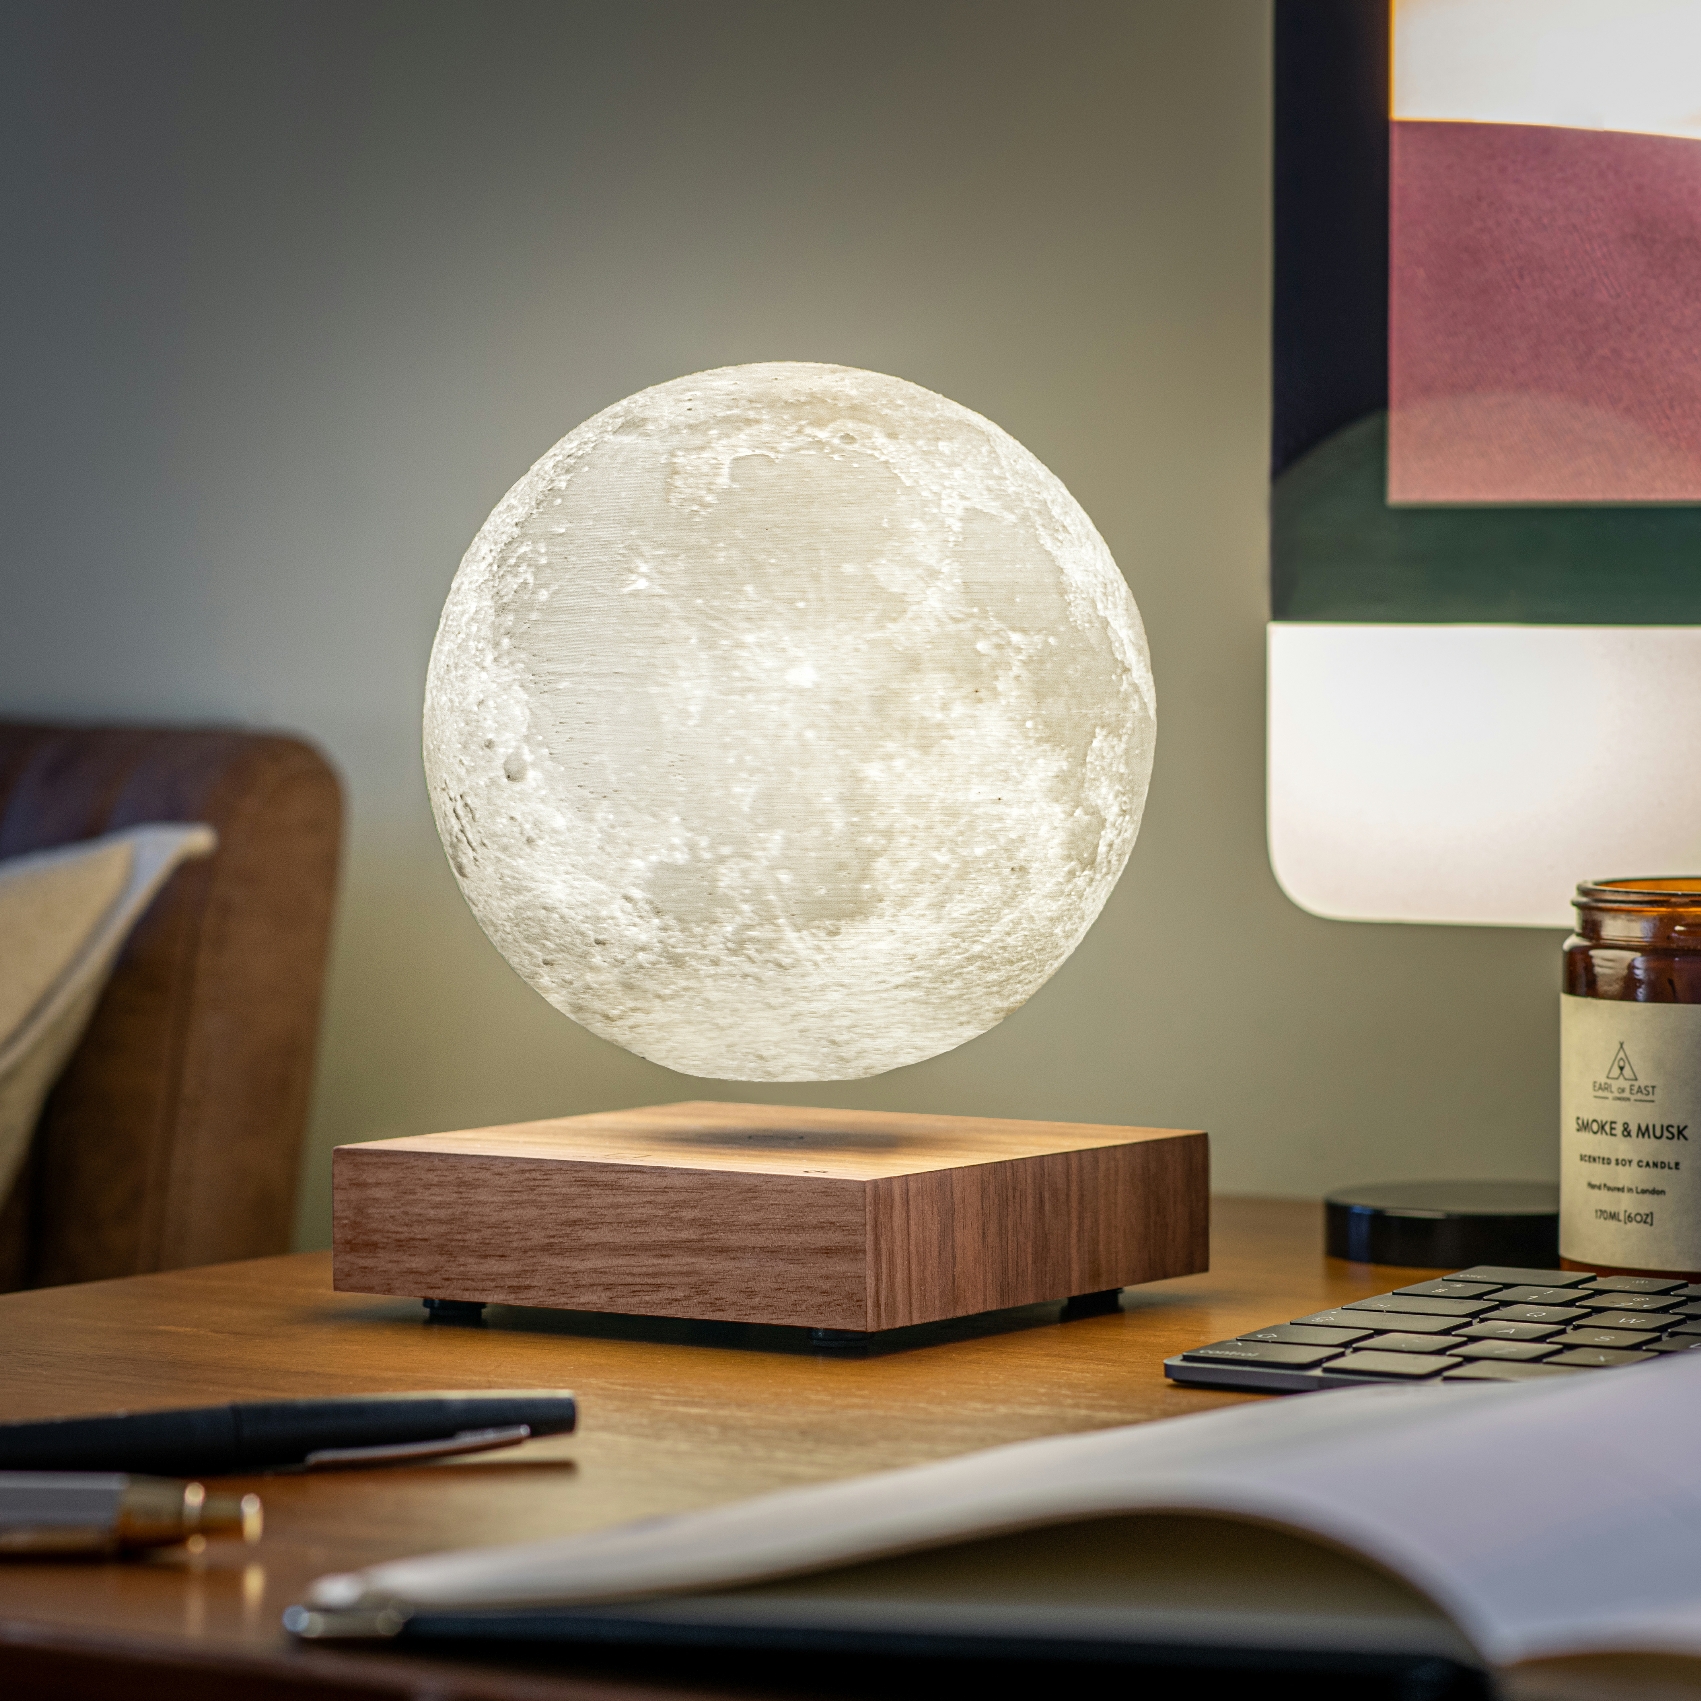 Gingko smart moon lamp walnut on desk white light